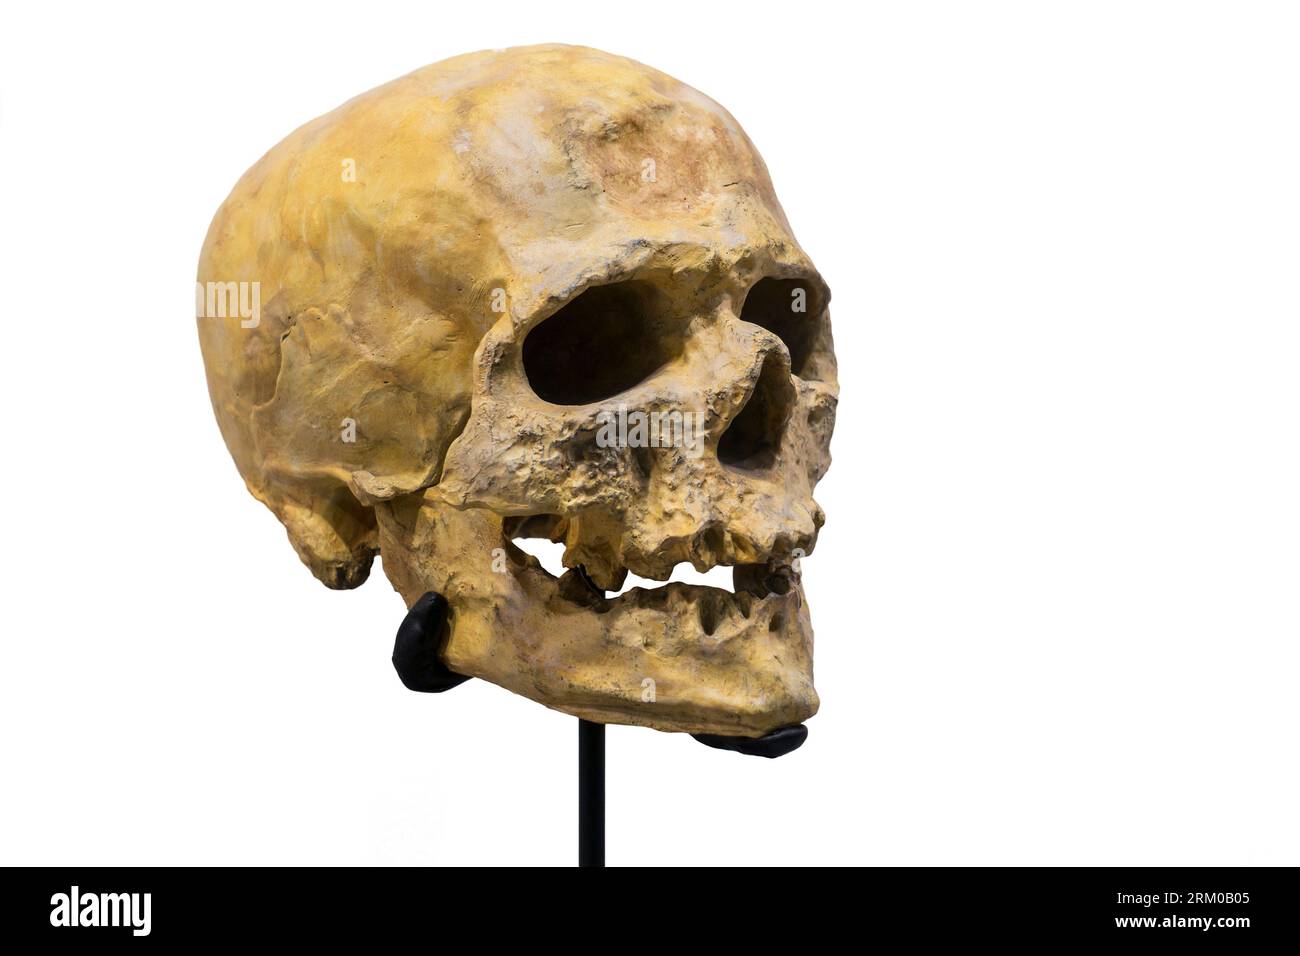 Réplique du crâne de Cro-Magnon, premier humain moderne à s'installer en Europe il y a environ 45 000 ans Banque D'Images